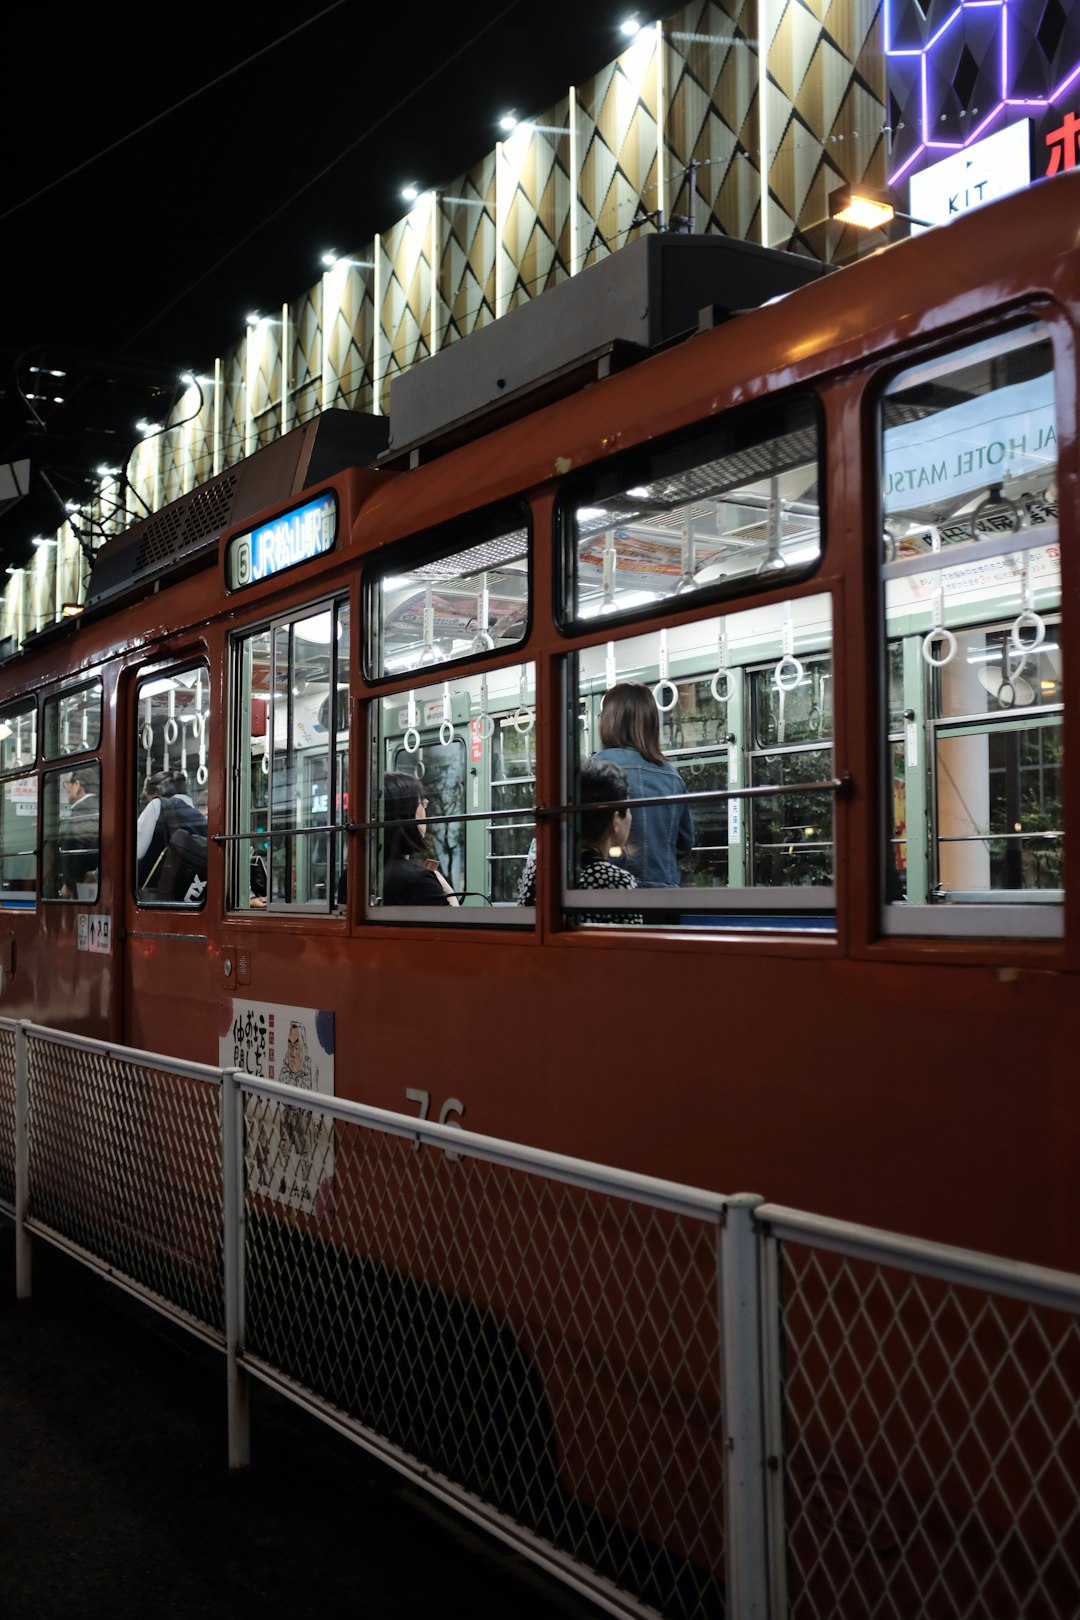 brown train near white railings